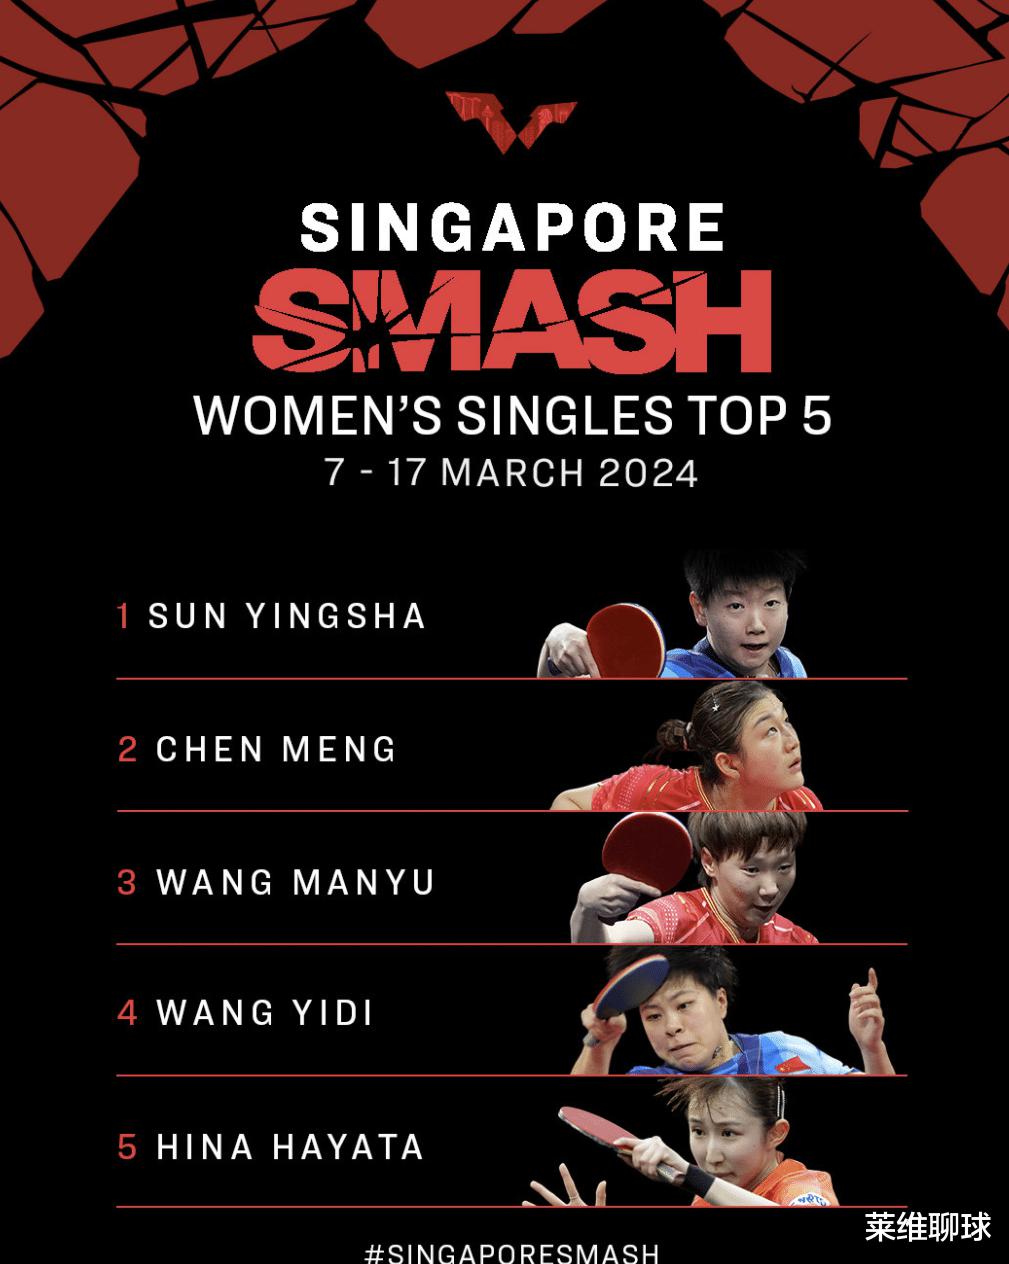 新加坡大满贯赛表态，倒计时最后1天力挺王曼昱，王艺迪接受现实(2)